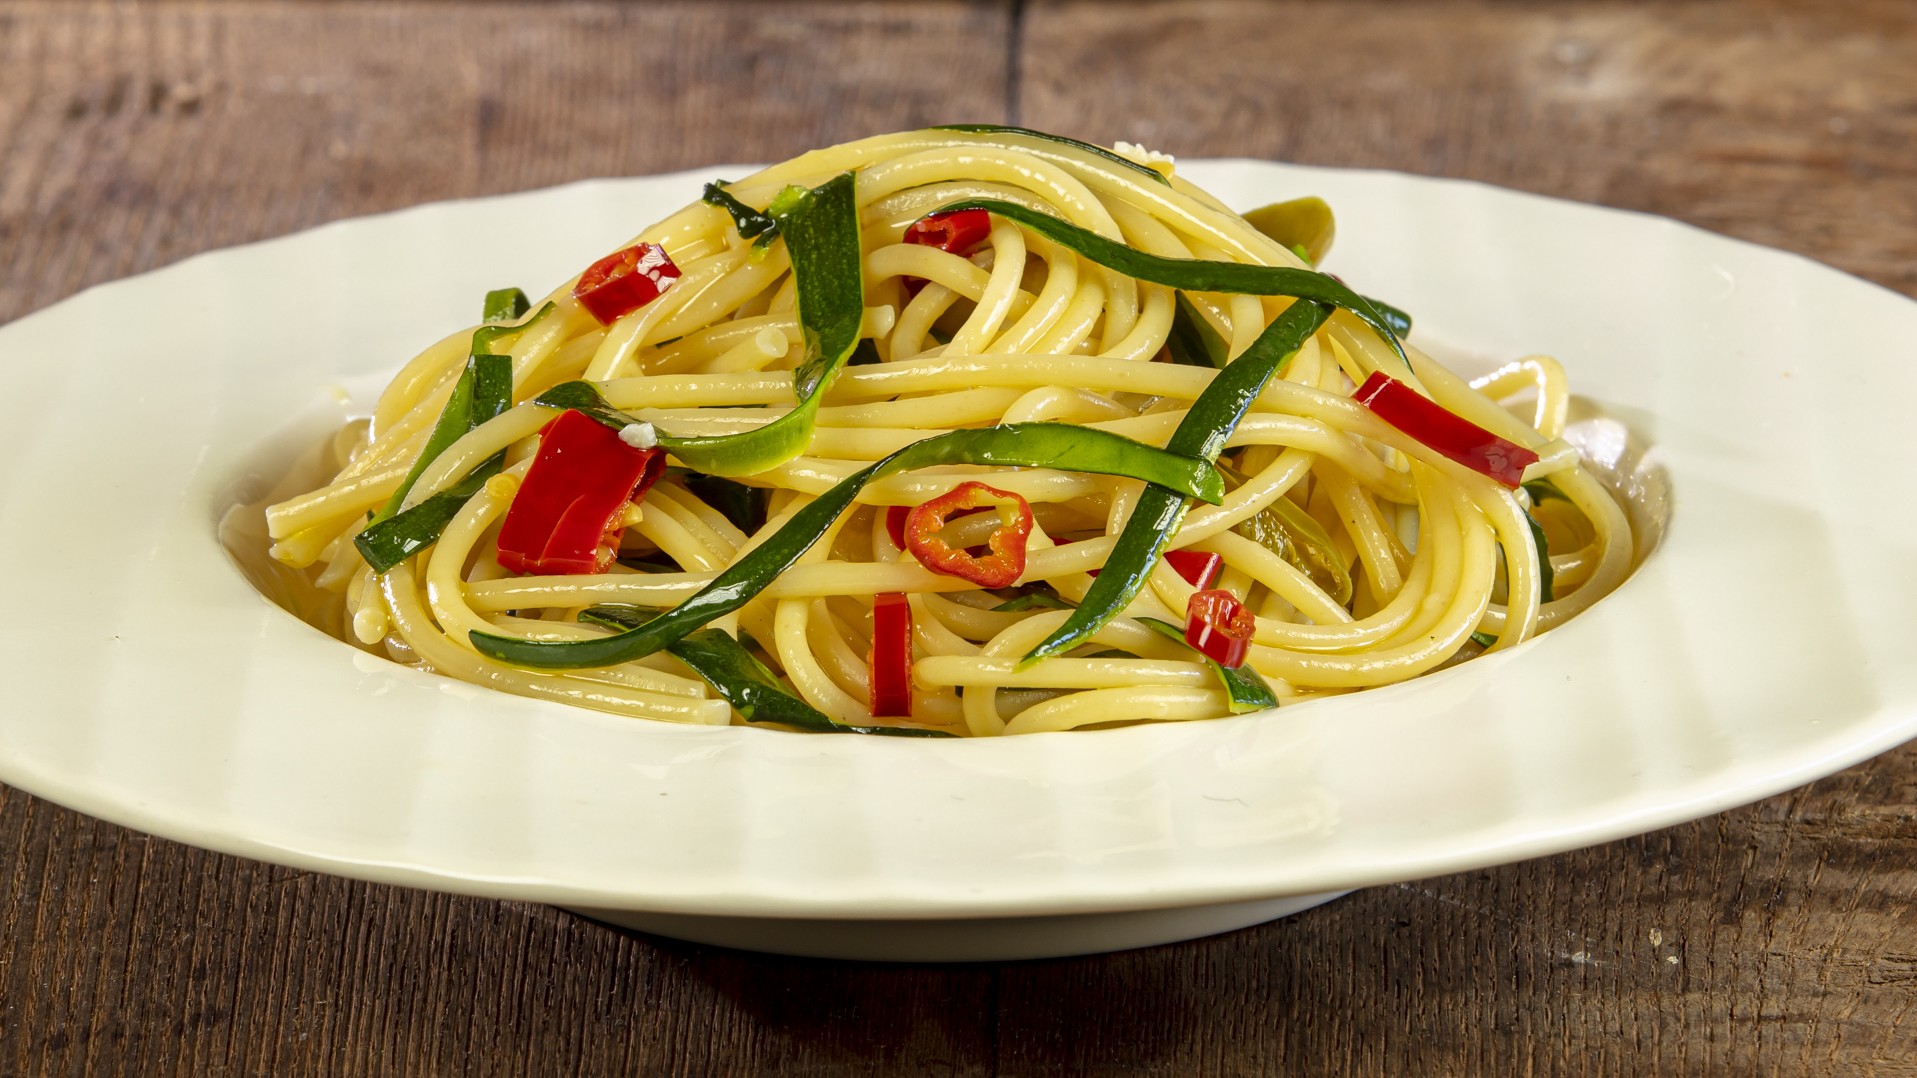 Spaghetti aglio olio e zucchine